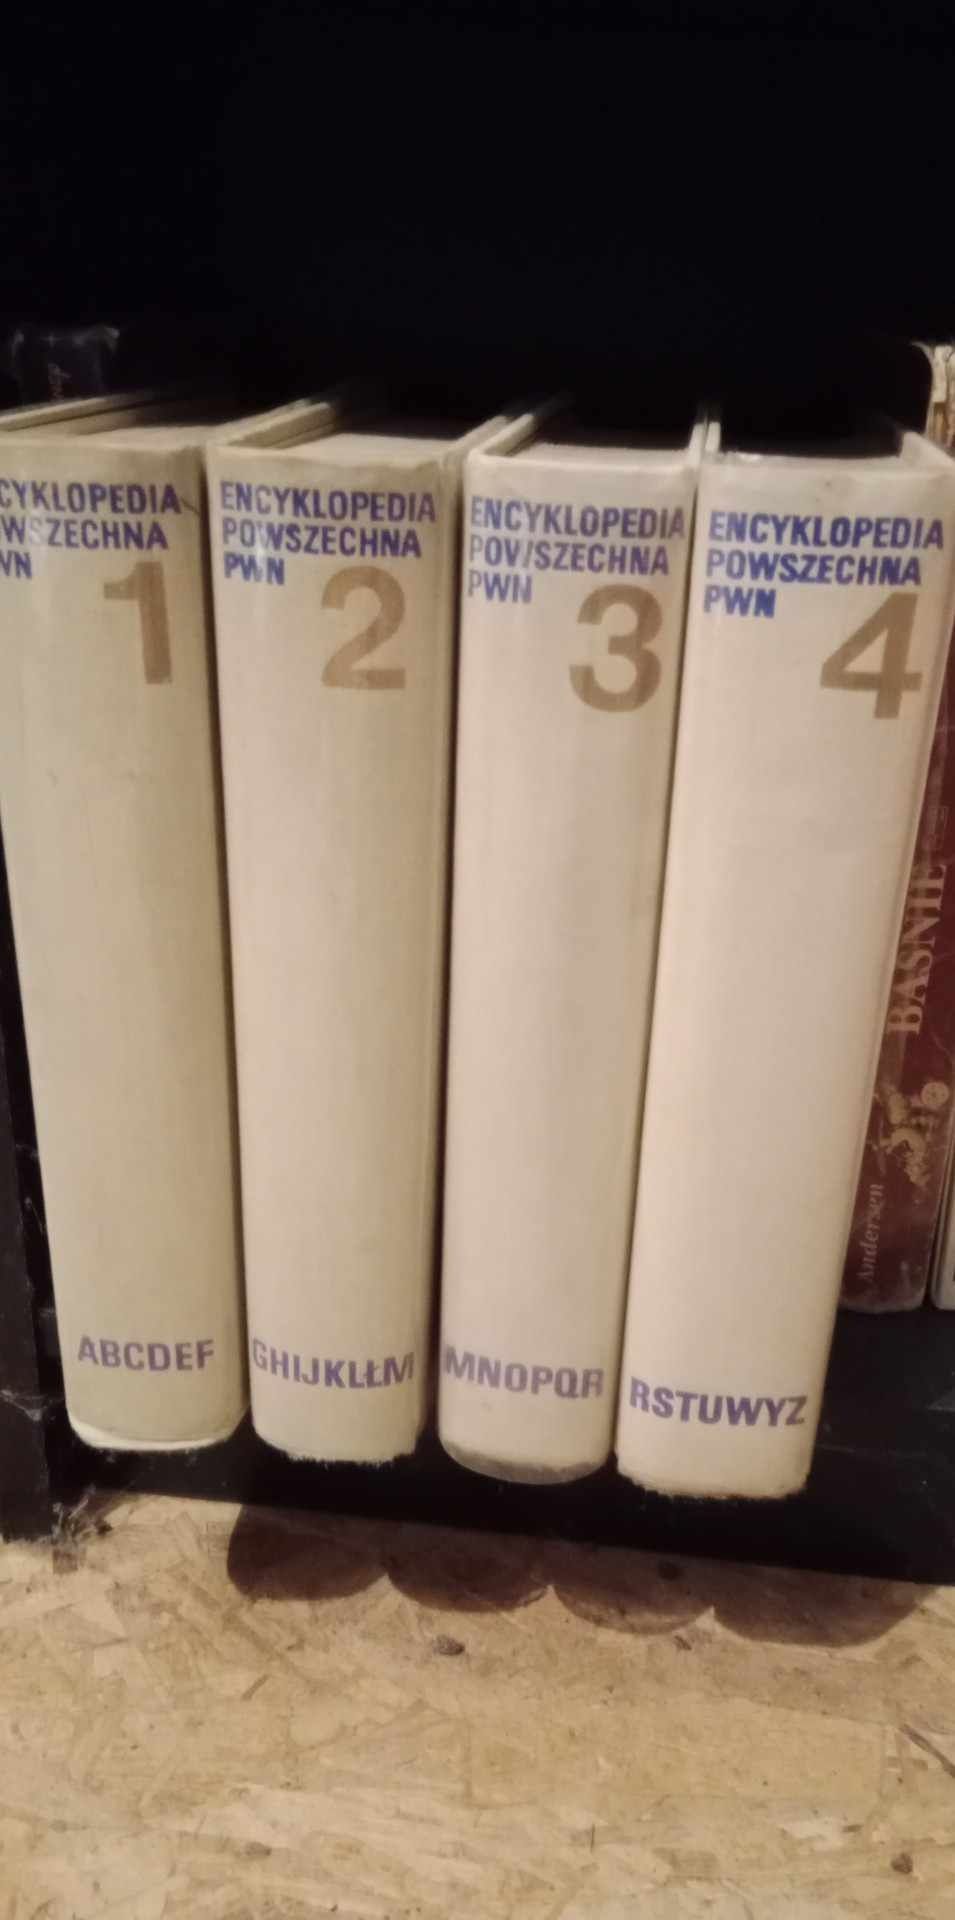 Encyklopedia PWN, 1973, 4 tomy